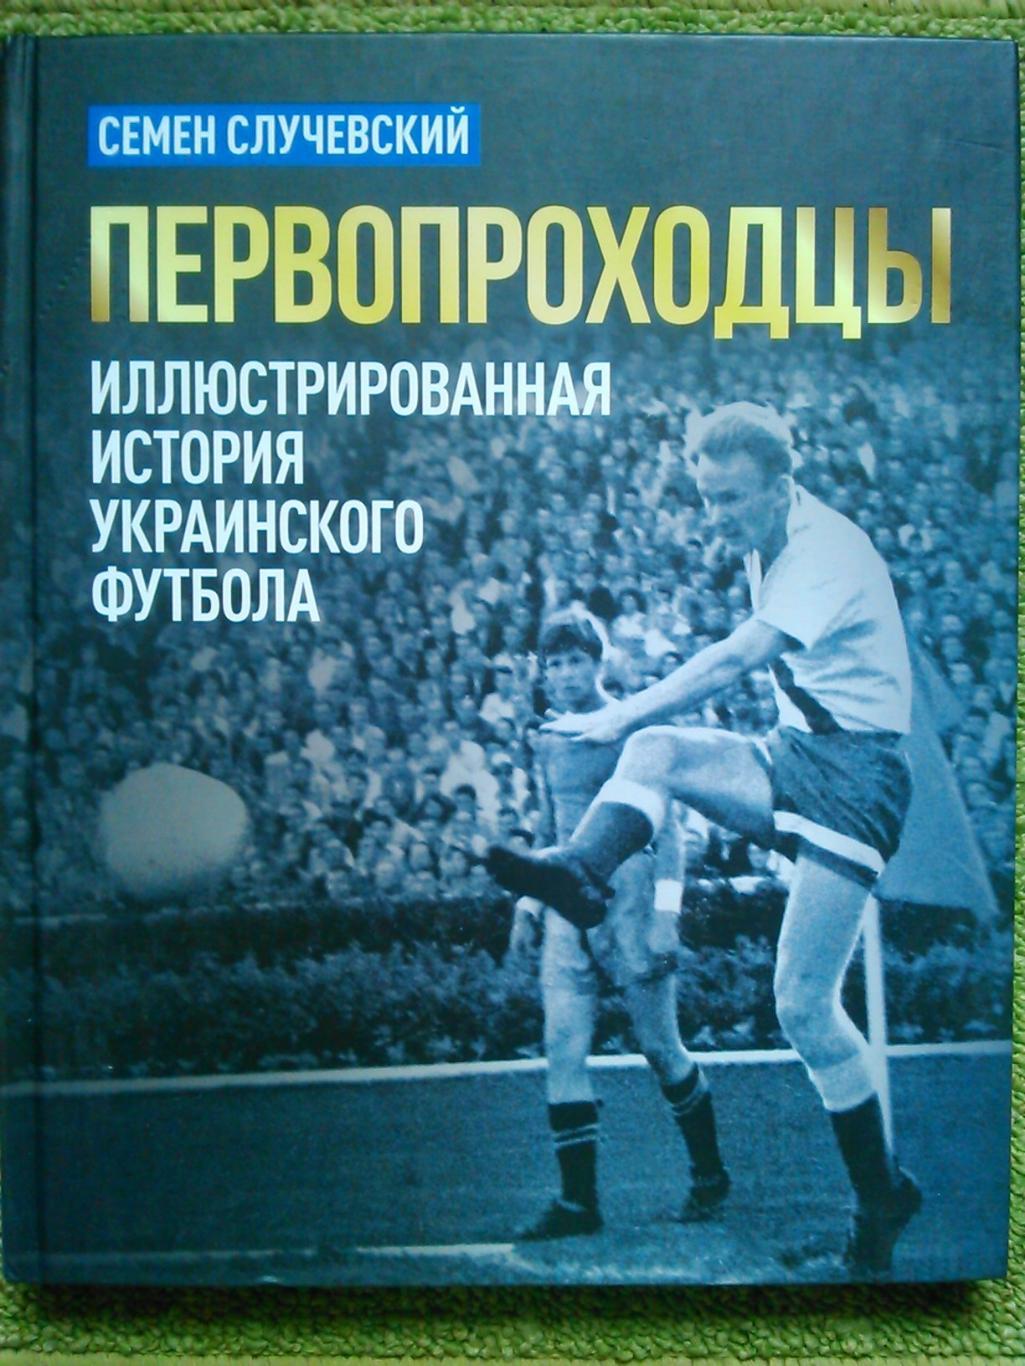 ПЕРВОПРОХОДЦЫ. Иллюстрированная история украинского футбола. Оптом скидки до 46%